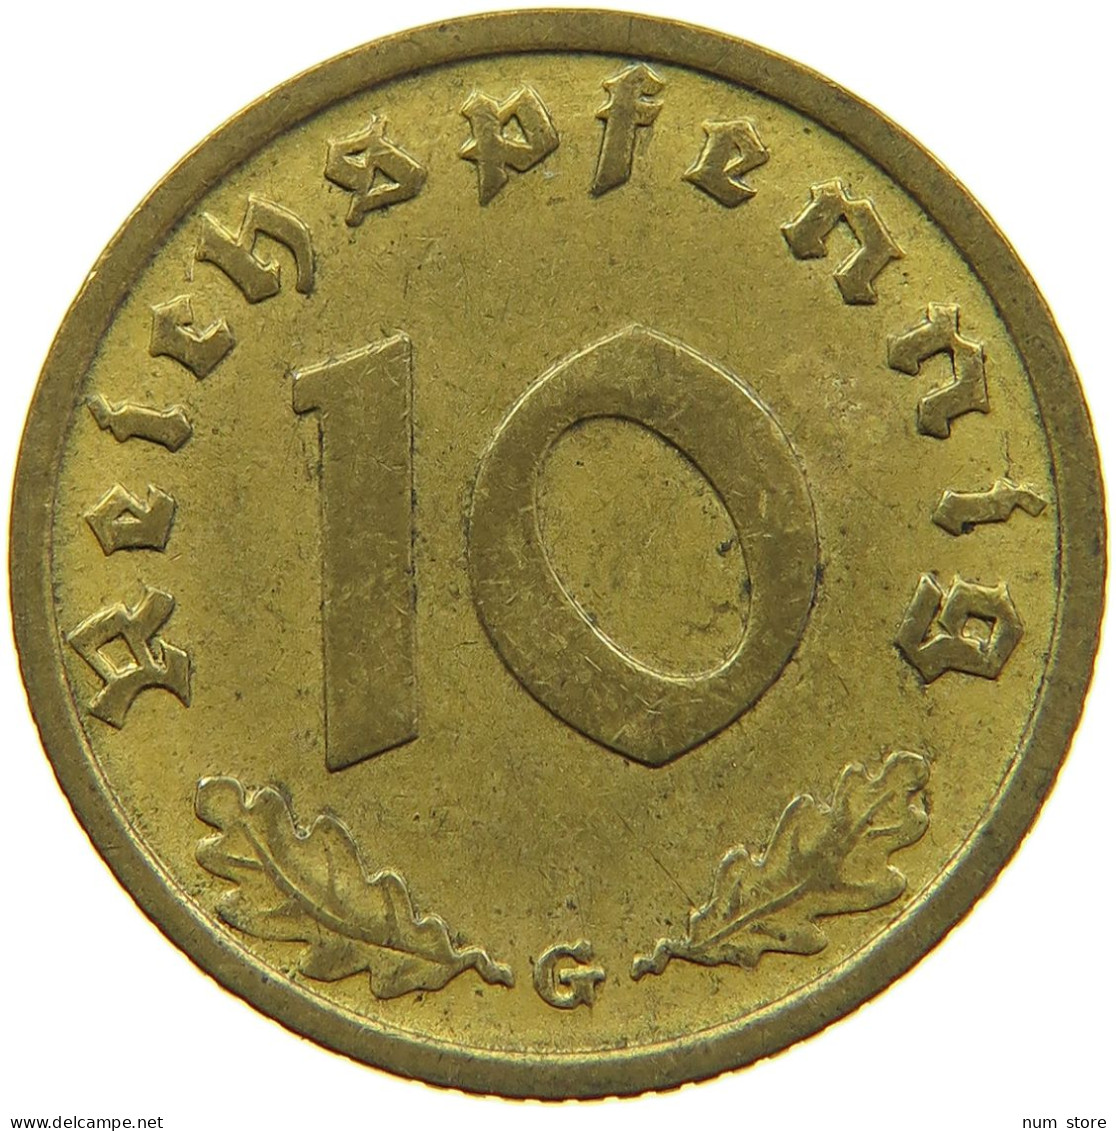 GERMANY 10 REICHSPFENNIG 1938 G #s095 0115 - 10 Reichspfennig